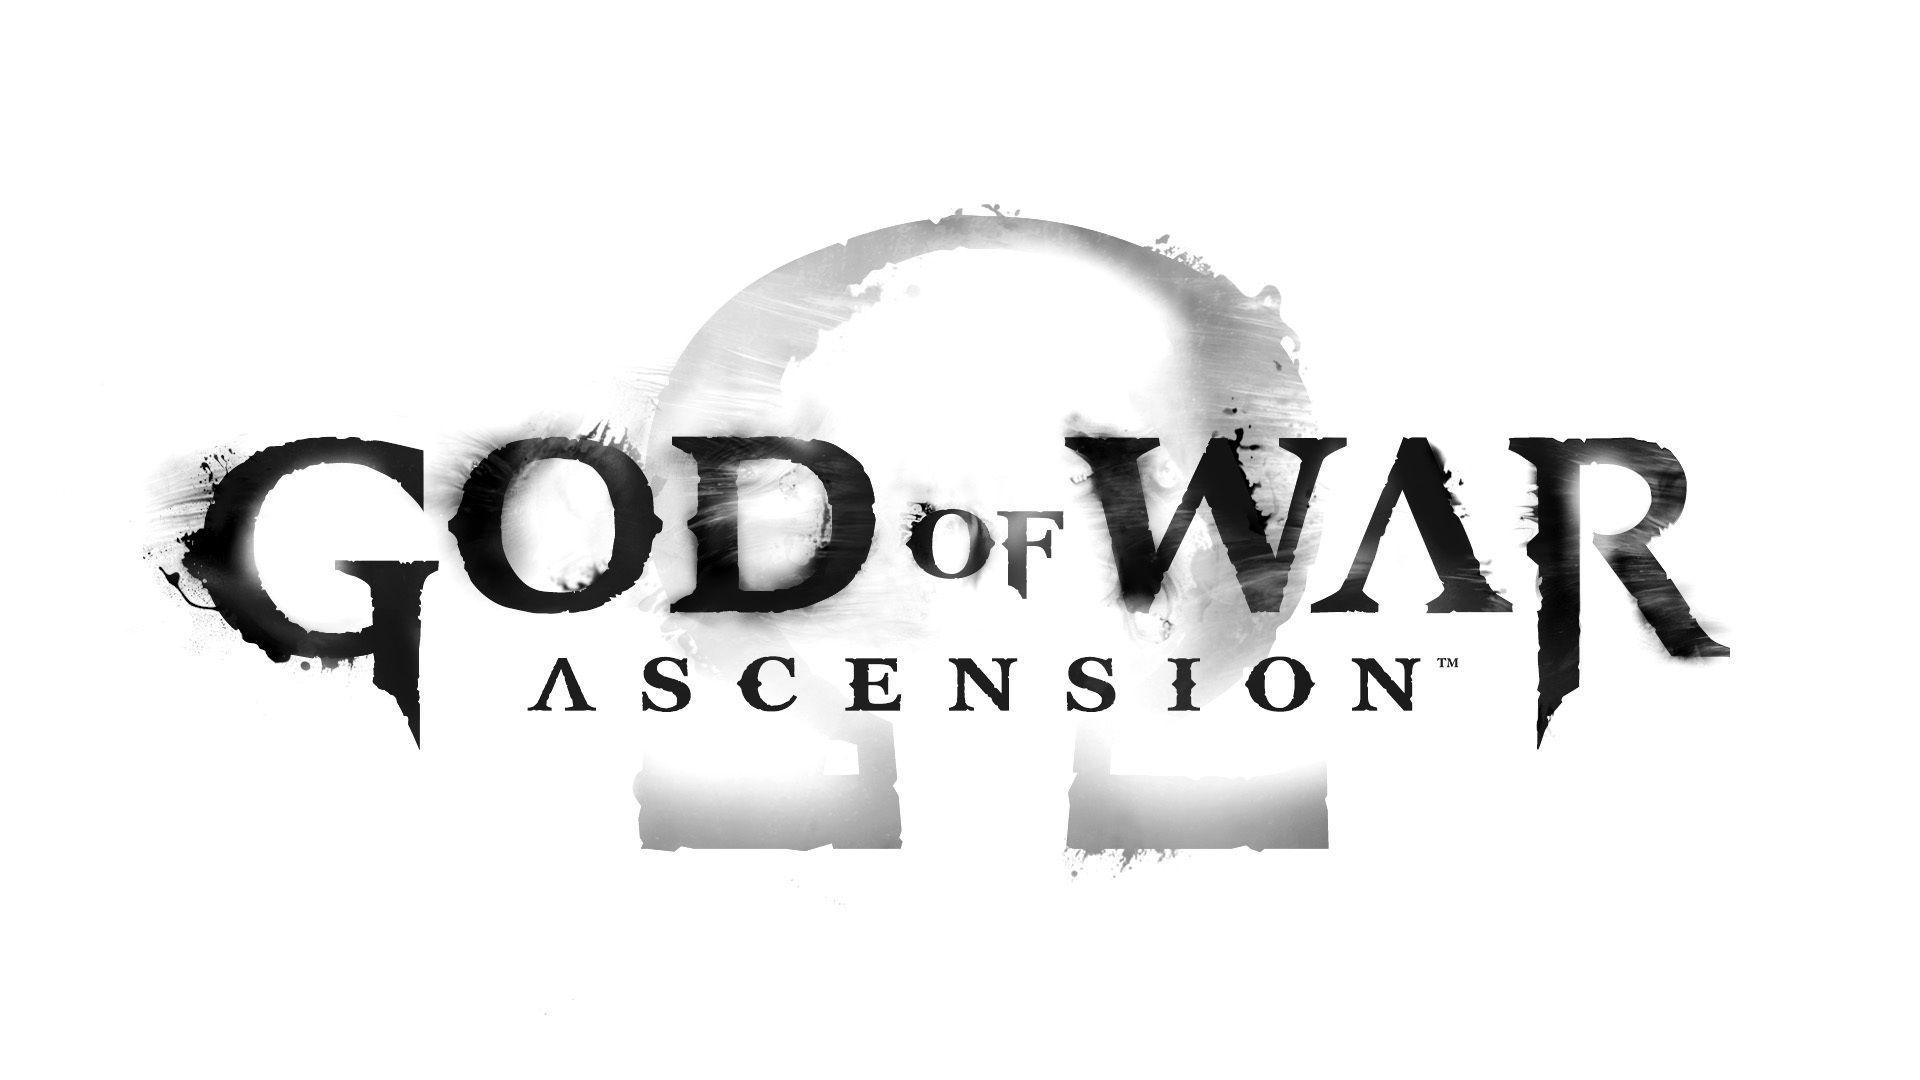 HD god of war logo wallpapers  Peakpx